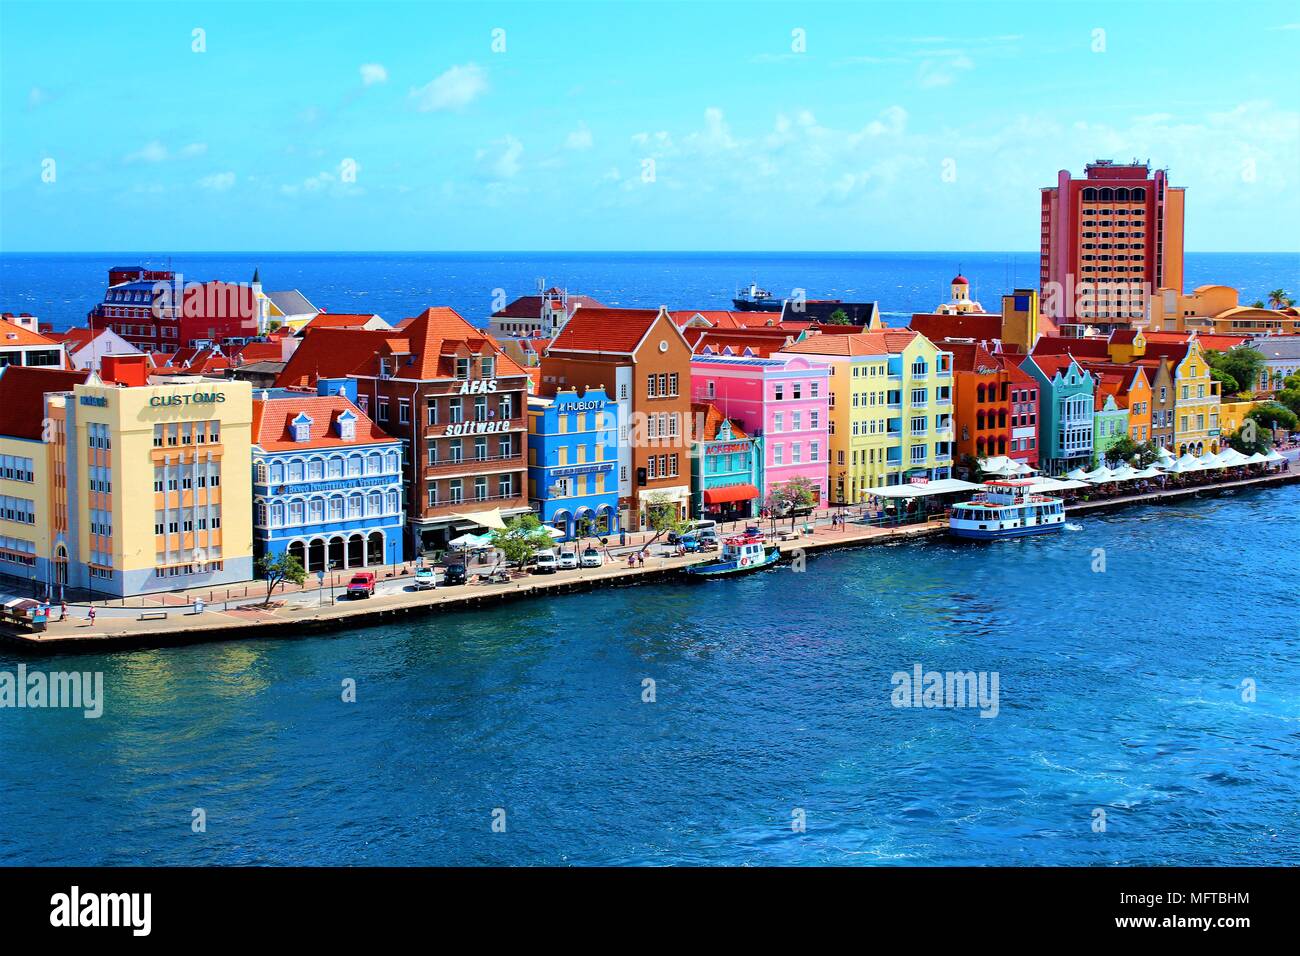 WILLEMSTAD, Curacao - FEBRUAR 2018: Ein Blick auf die Innenstadt von Willemstad von der Spitze eines Kreuzfahrtschiffs in Willemstad Hafen angedockt. Stockfoto